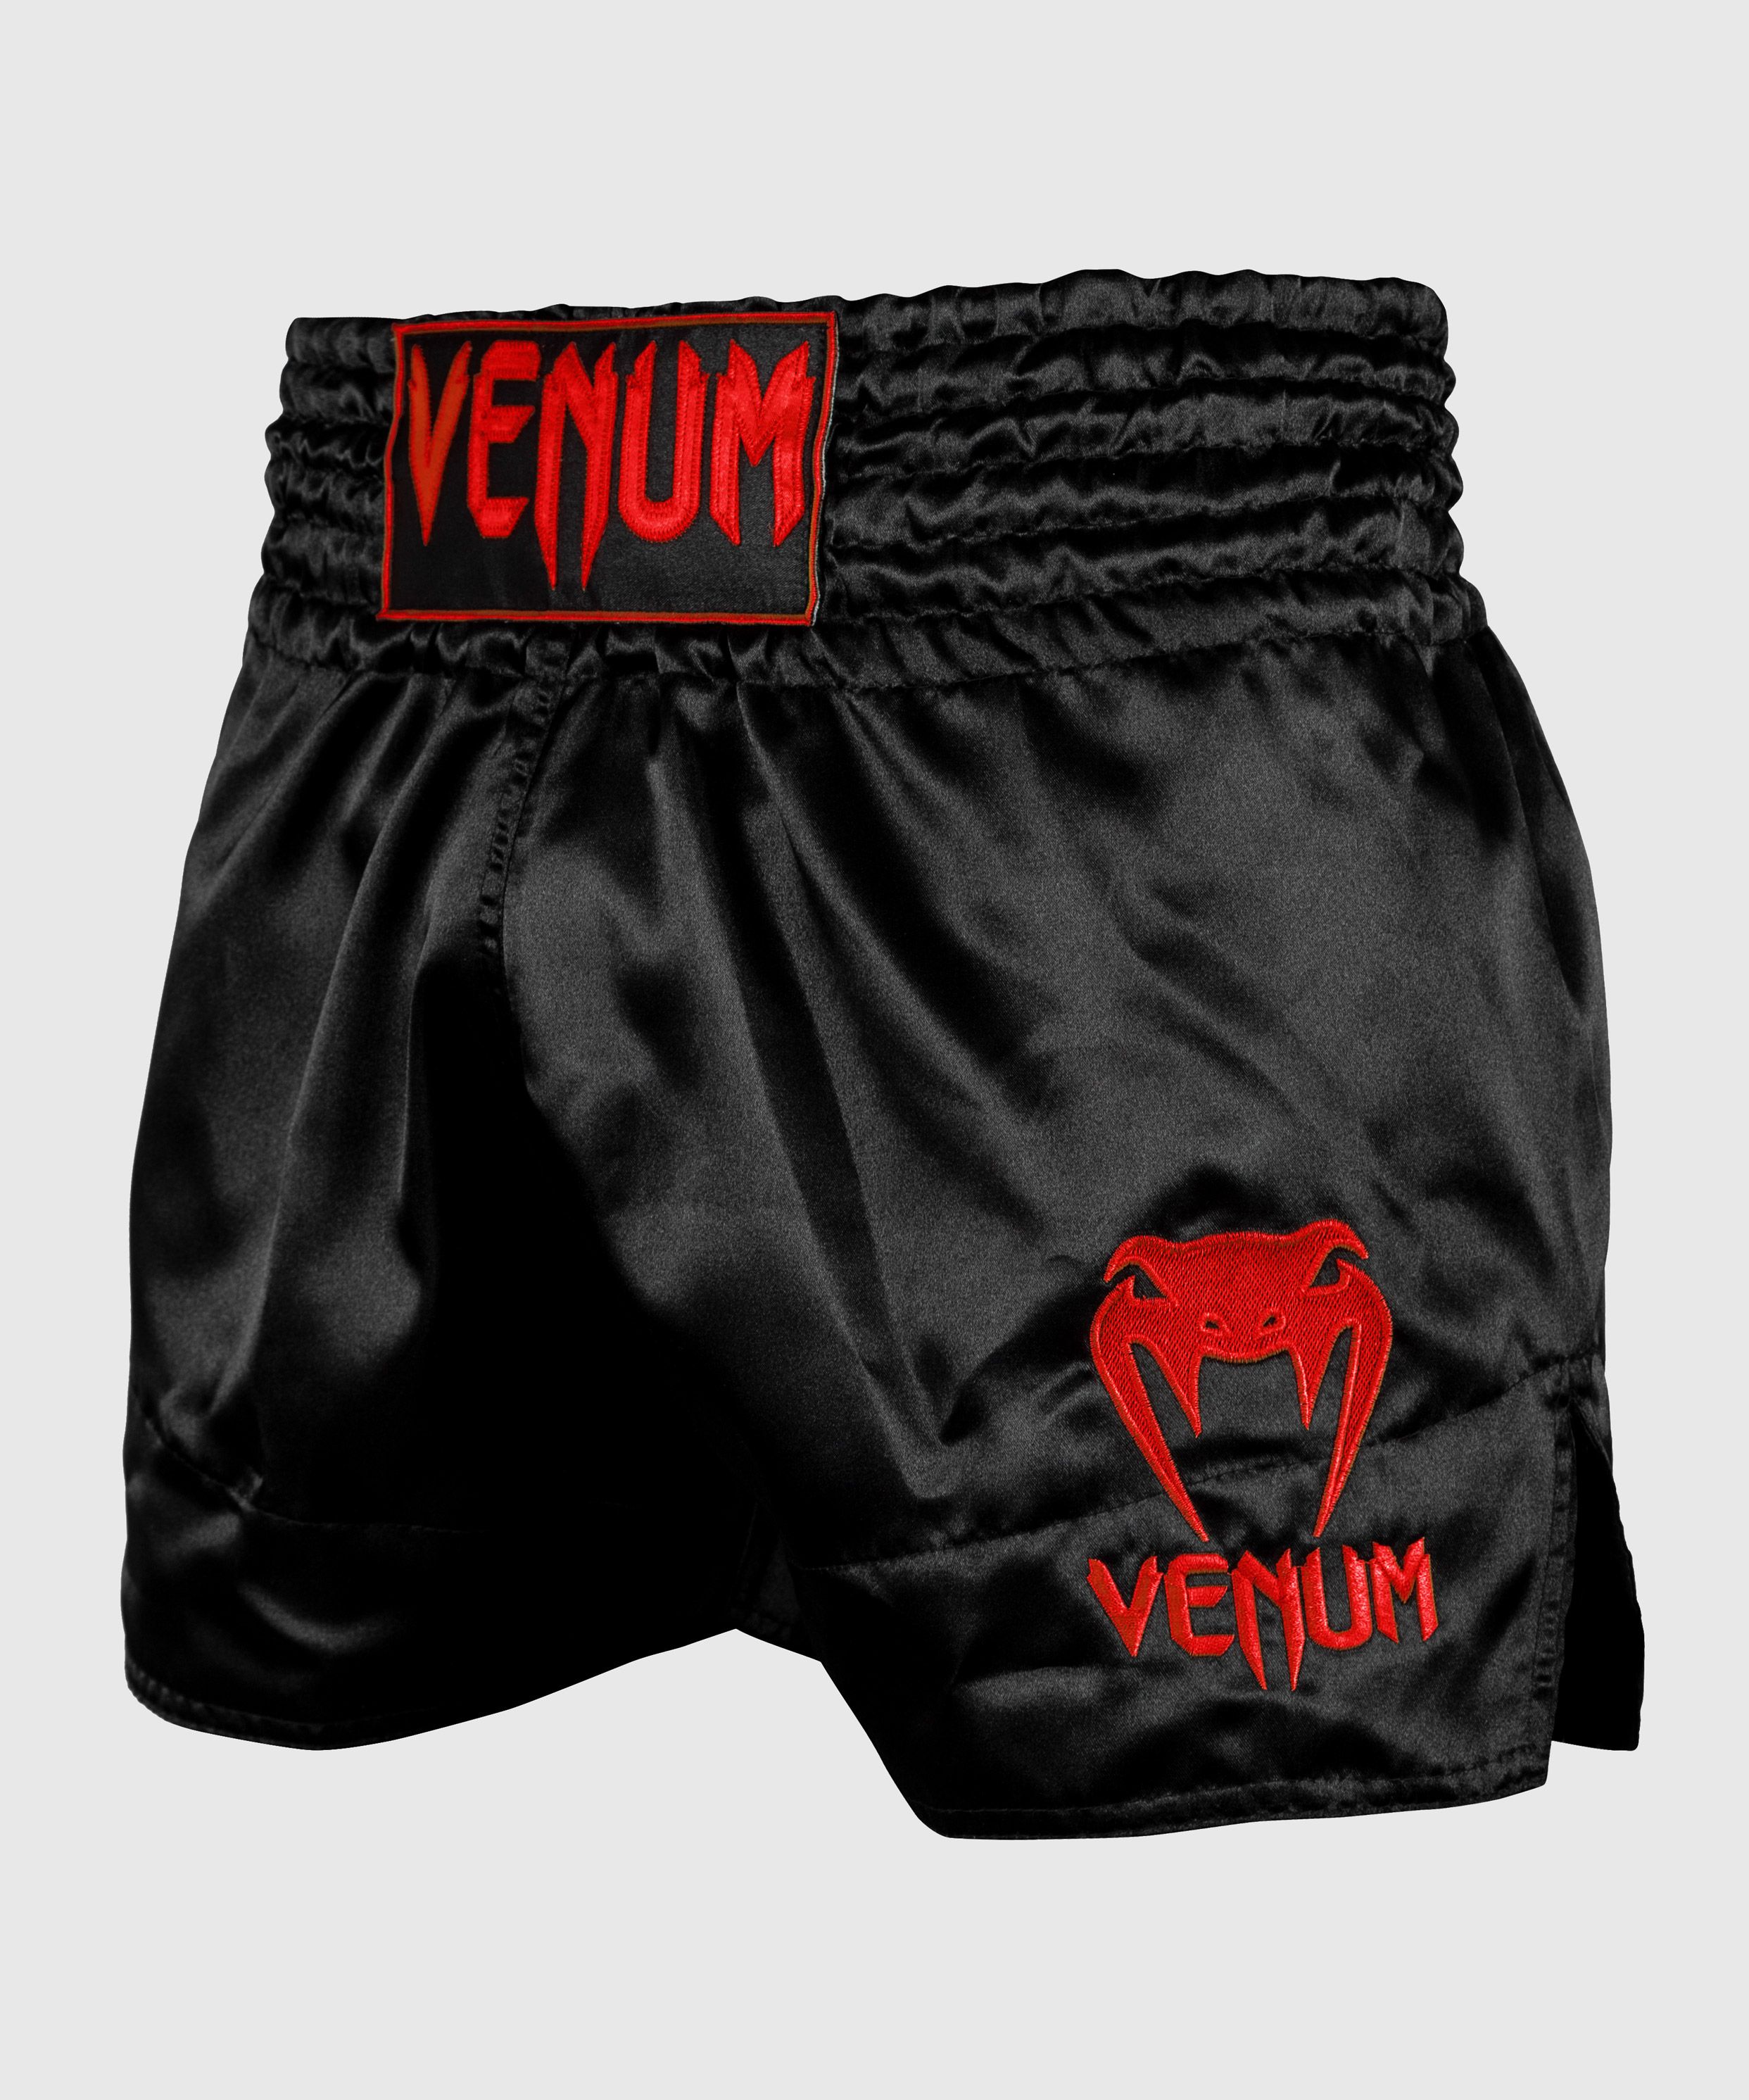 Short de Muay Thai Venum Classic - Noir/Rouge